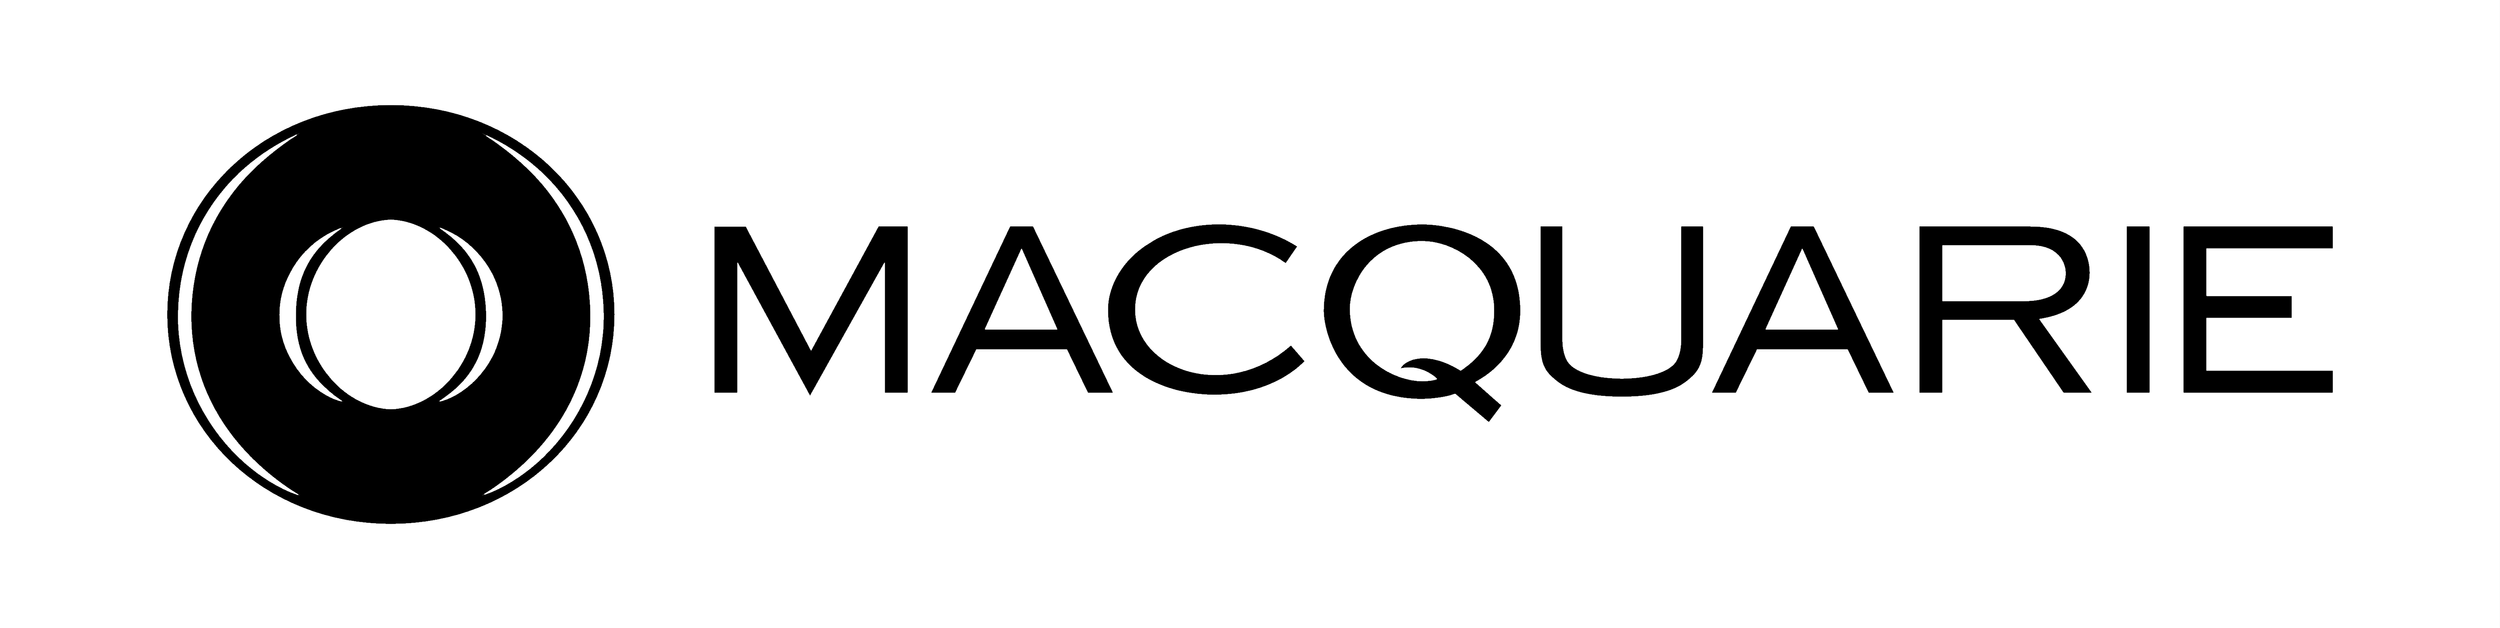 Macquarie_logo.png